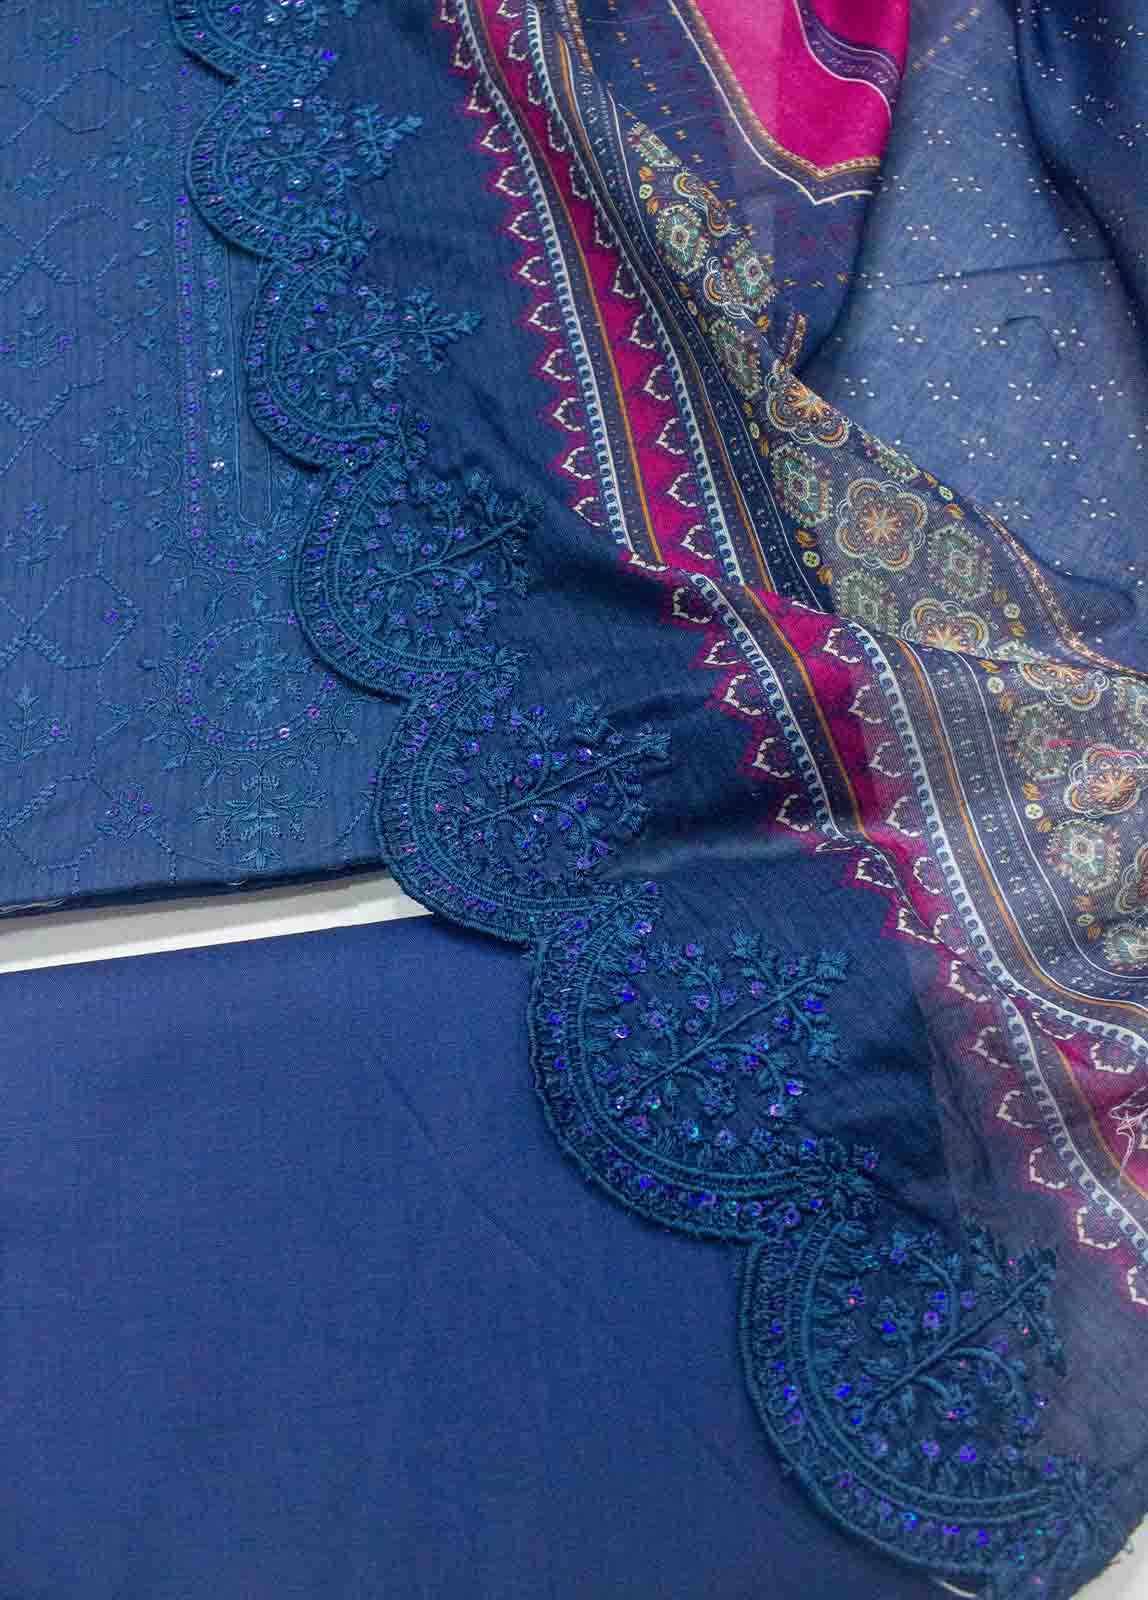 EU-R276-3 Piece Unstitched Lawn Embroidery Suit